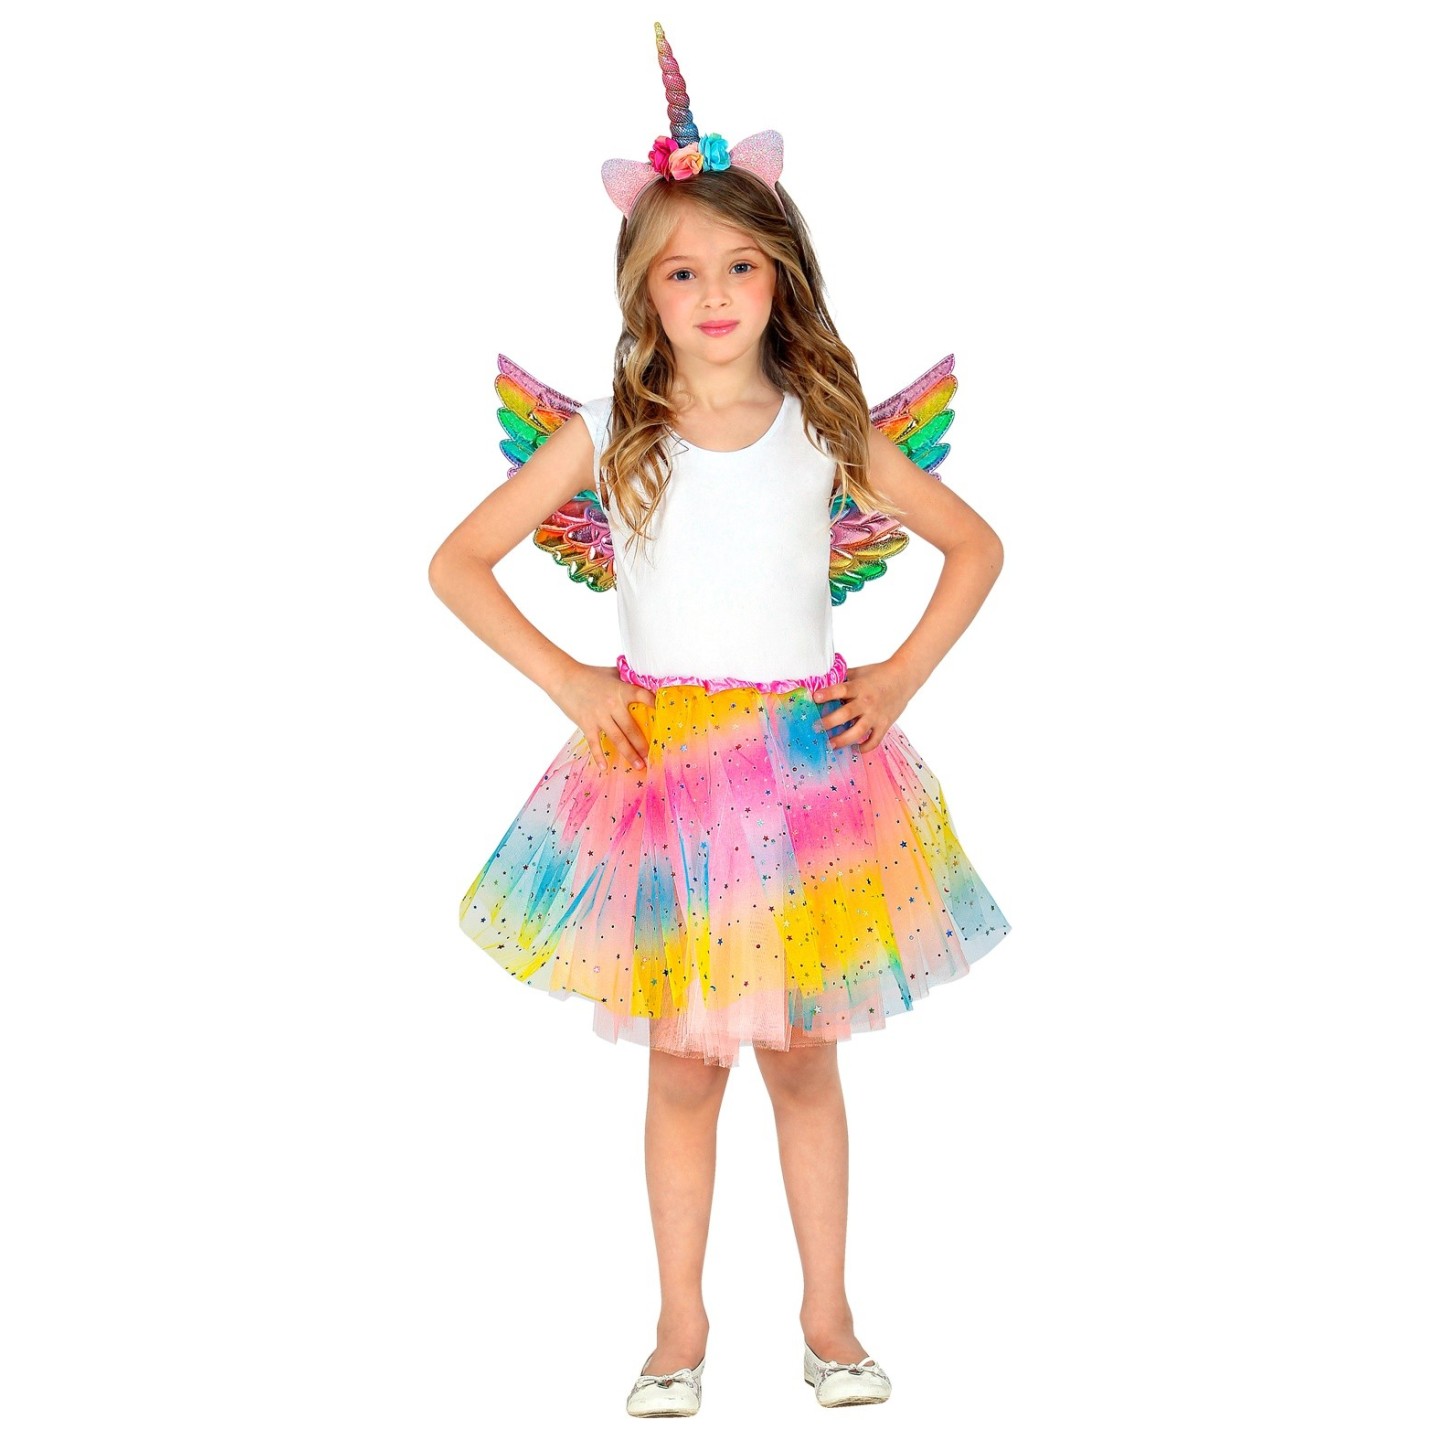 Avonturier aangrenzend periscoop Eenhoorn unicorn verkleedset kind | Jokershop.be - carnavalskleding